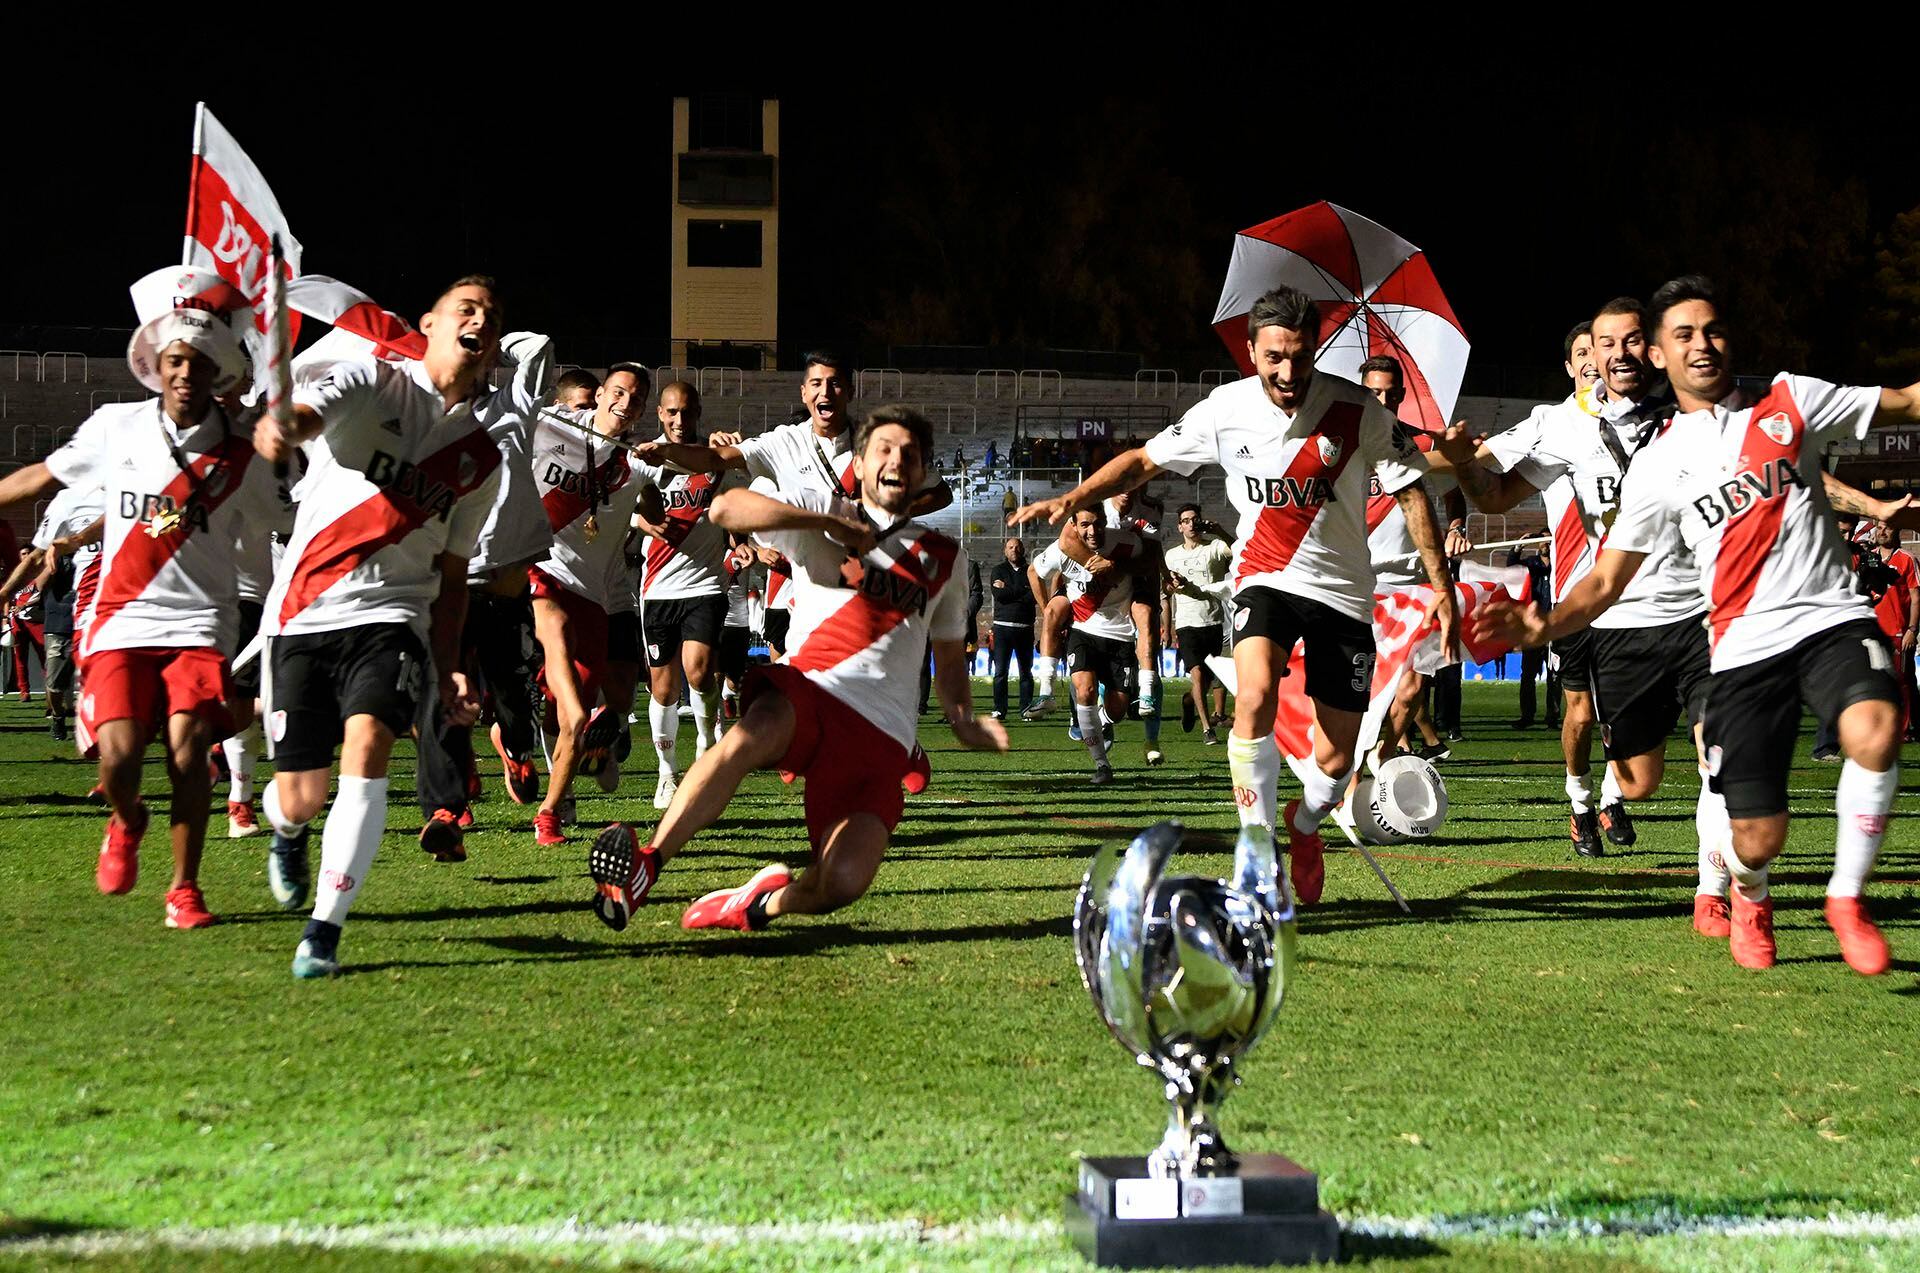 El festejo de los jugadores de River tras ganarle la Supercopa Argentina a Boca en 2018 (AFP / Andres LARROVERE)